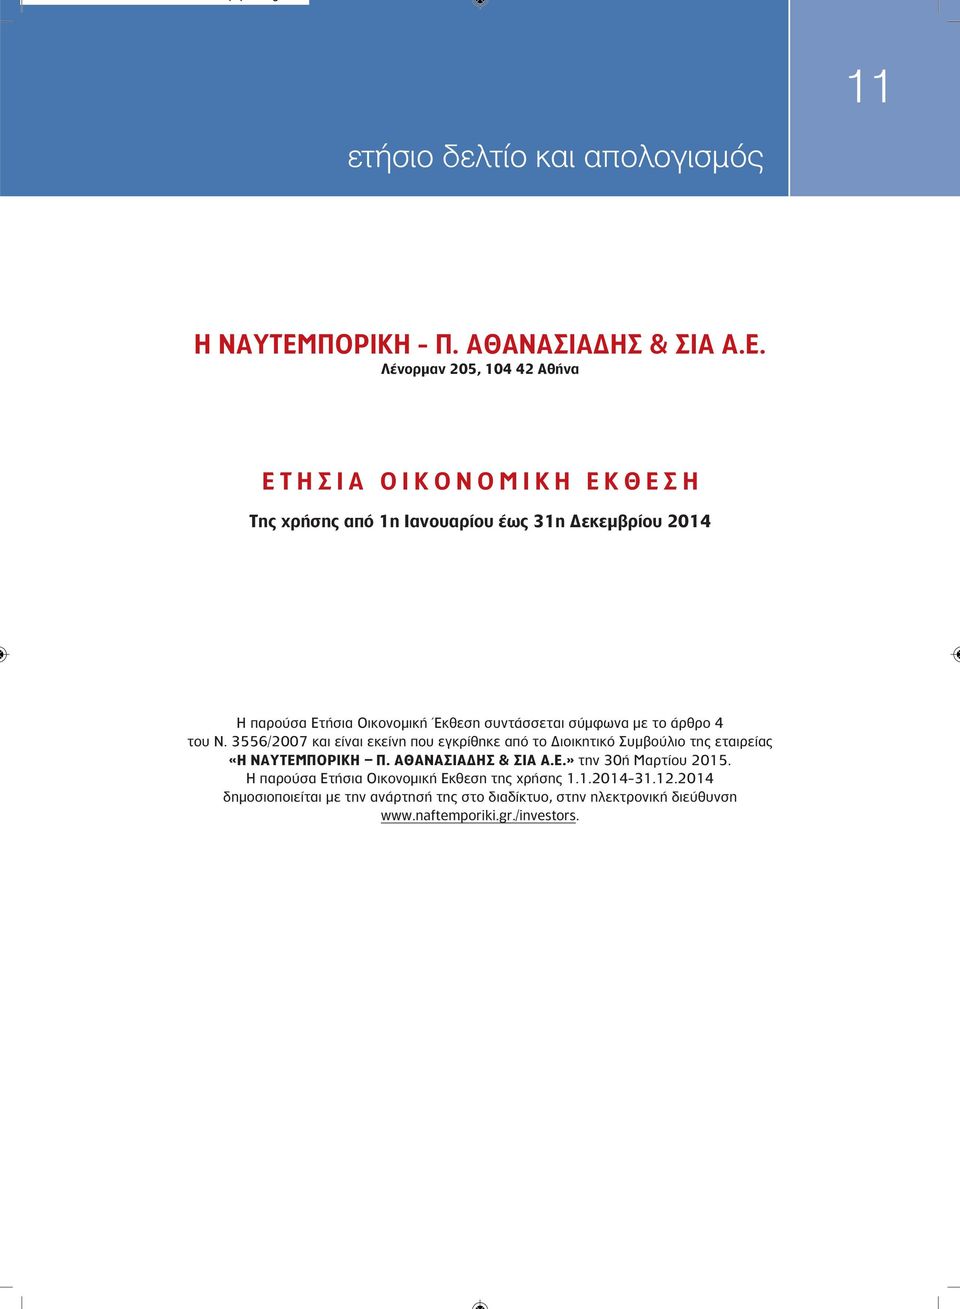 Λένορμαν 205, 104 42 Αθήνα ΕΤΗΣΙΑ ΟΙΚΟΝΟΜΙΚΗ ΕΚΘΕΣΗ Της χρήσης από 1η Ιανουαρίου έως 31η Δεκεμβρίου 2014 H παρούσα Ετήσια Οικονομική Έκθεση